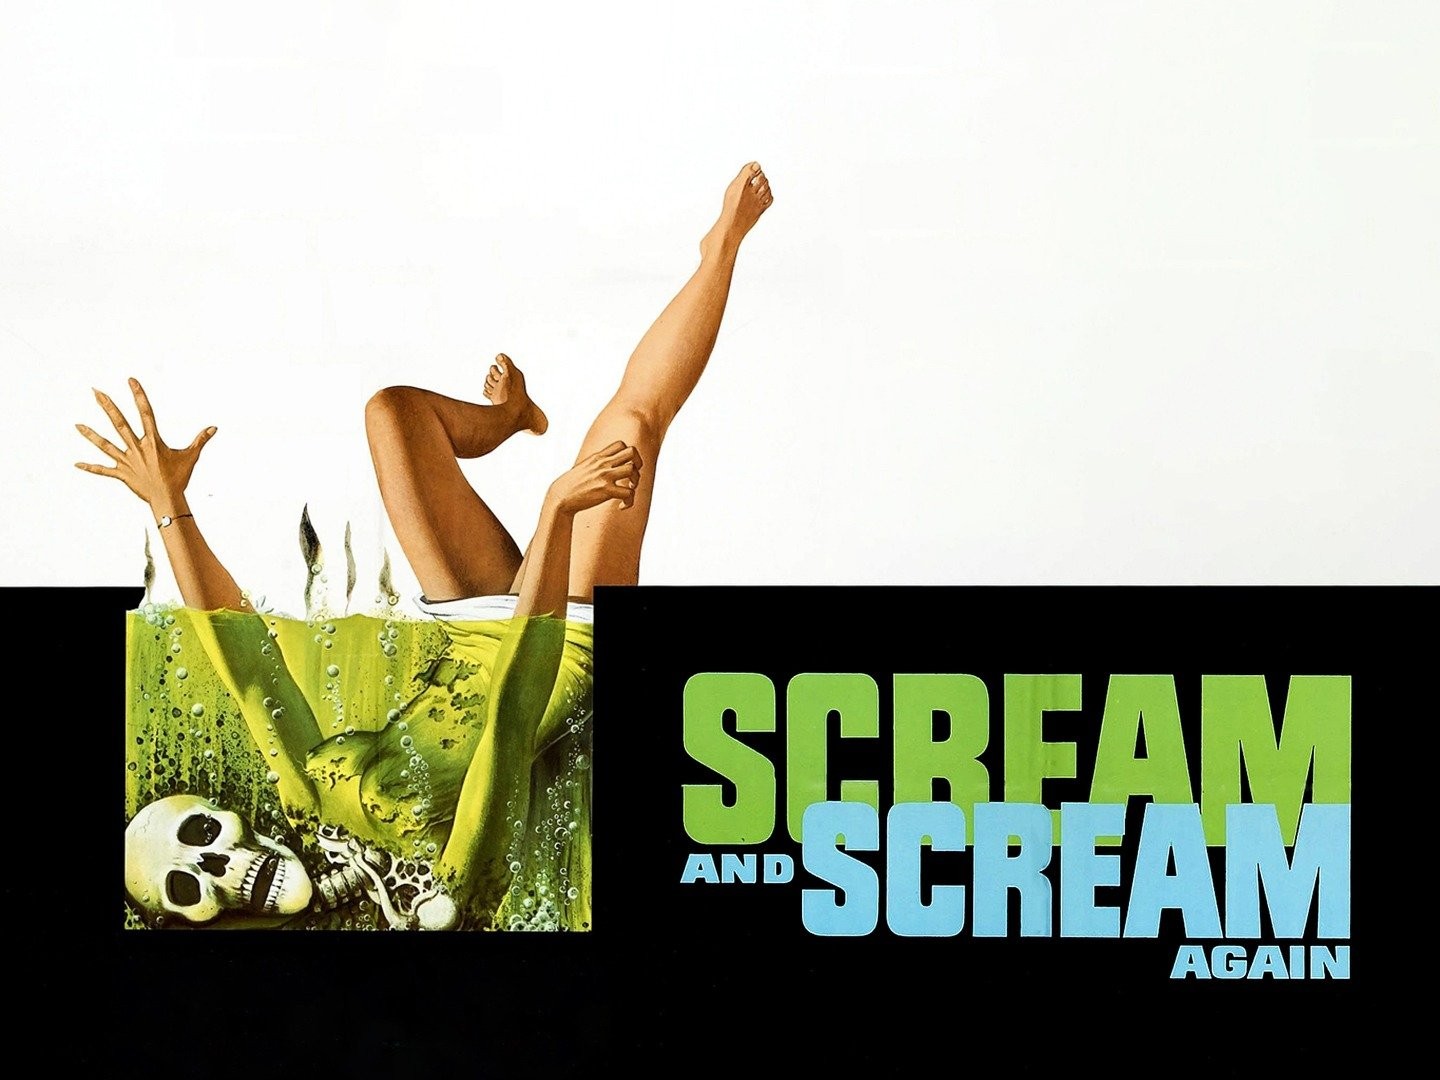 Scream and Scream Again - Wikipedia